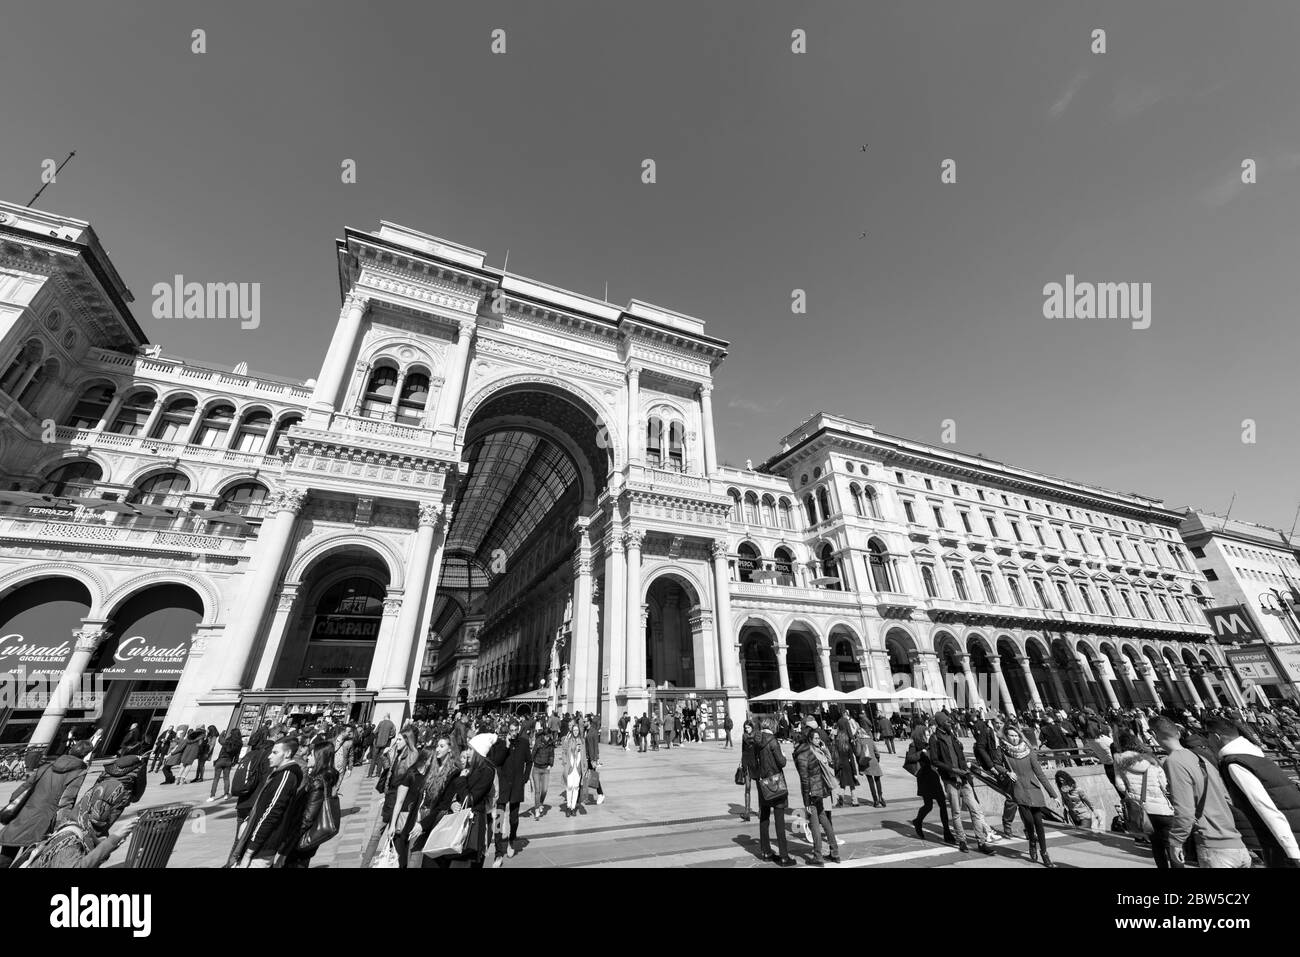 MILÁN, ITALIA - 16, MARZO de 2018: Imagen en blanco y negro del exterior de la Galería Vittorio Emanuele II, un recorrido turístico de Milán, Italia Foto de stock